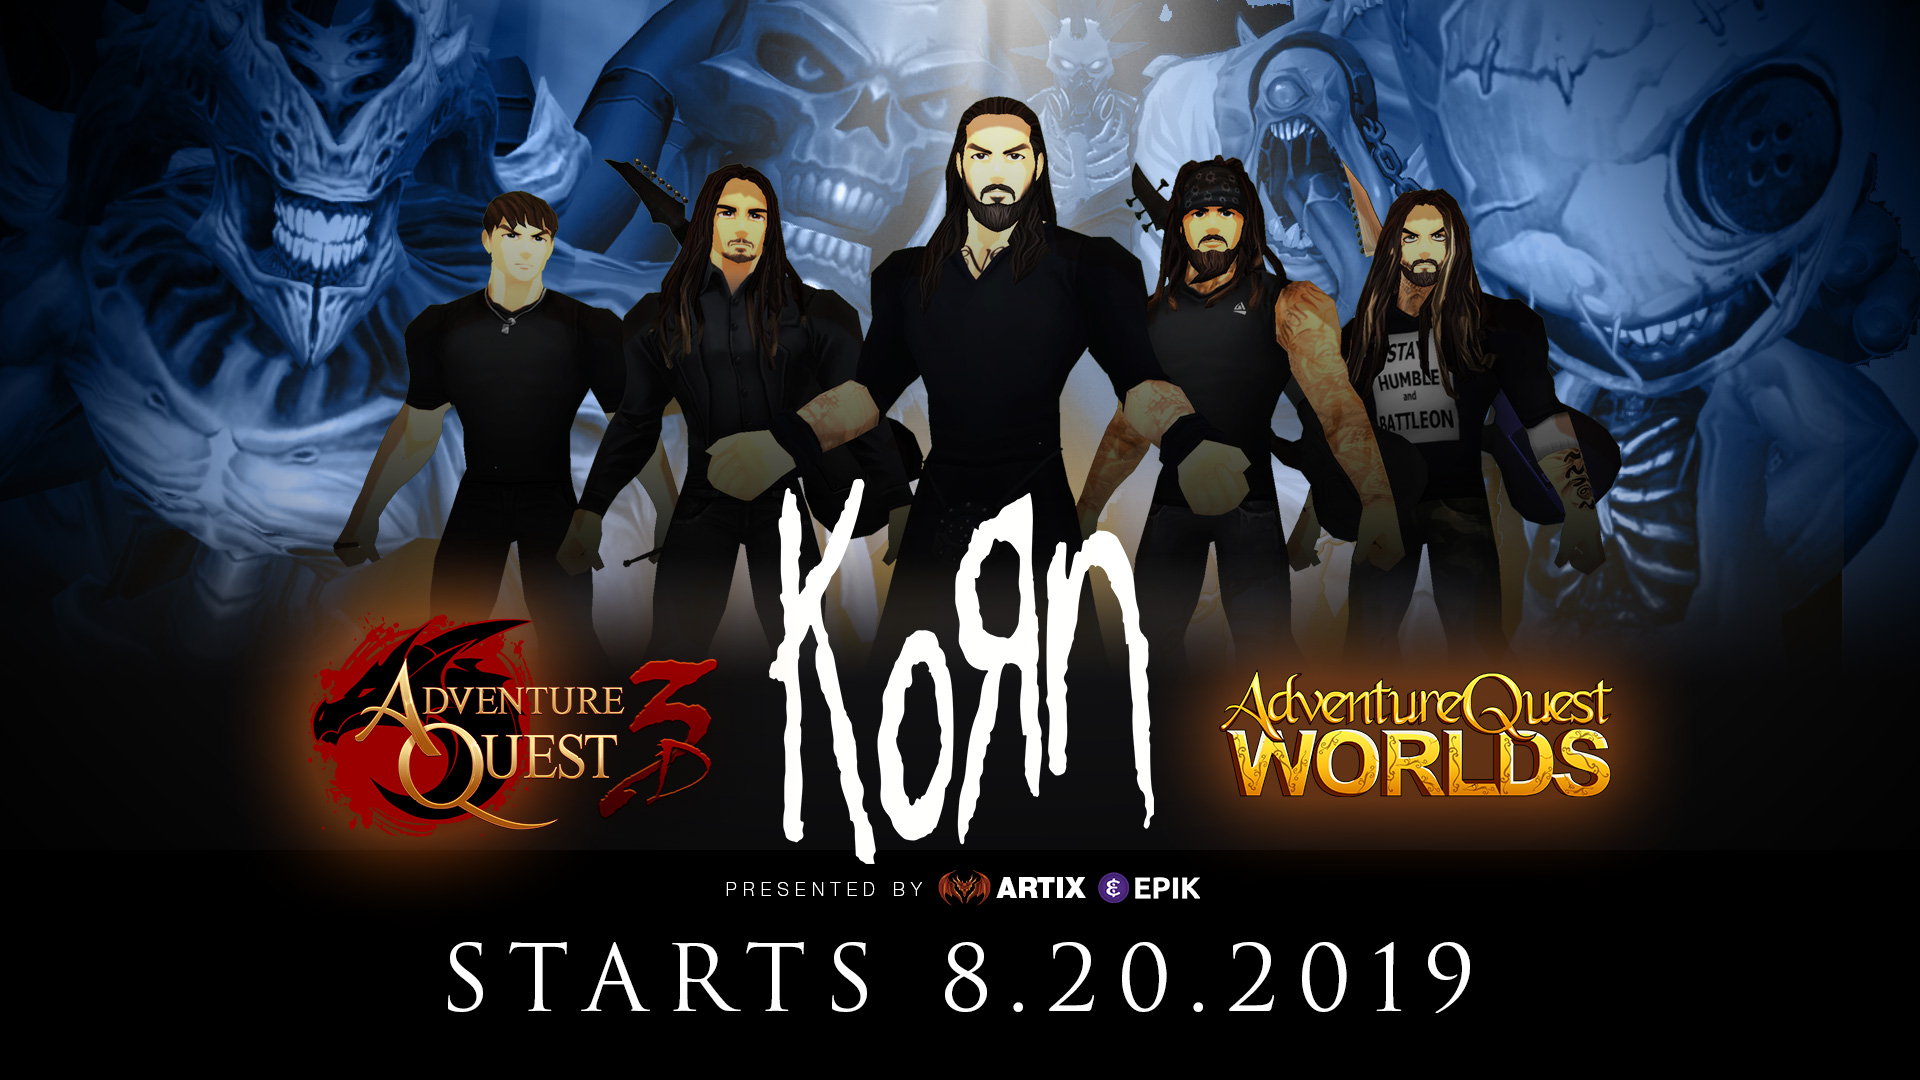 Korn video game battle concert in AdventureQuest 3D